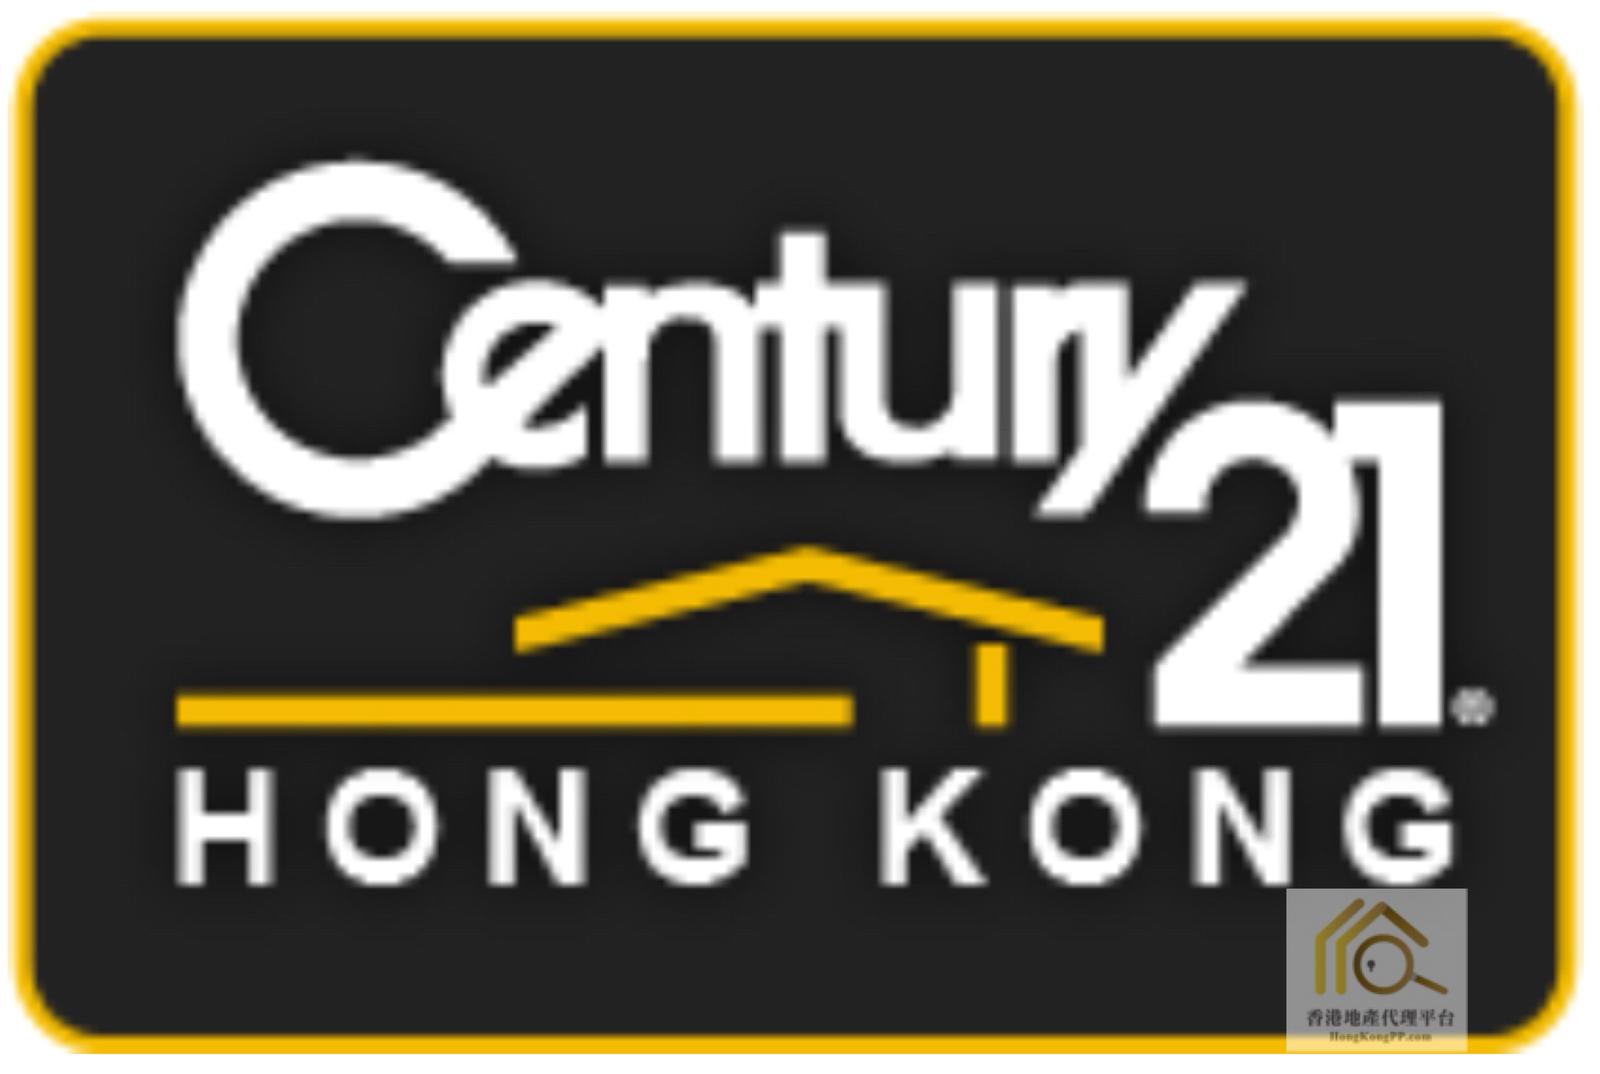 地產代理公司:  世紀21世紀21聯動(香港)控股有限公司